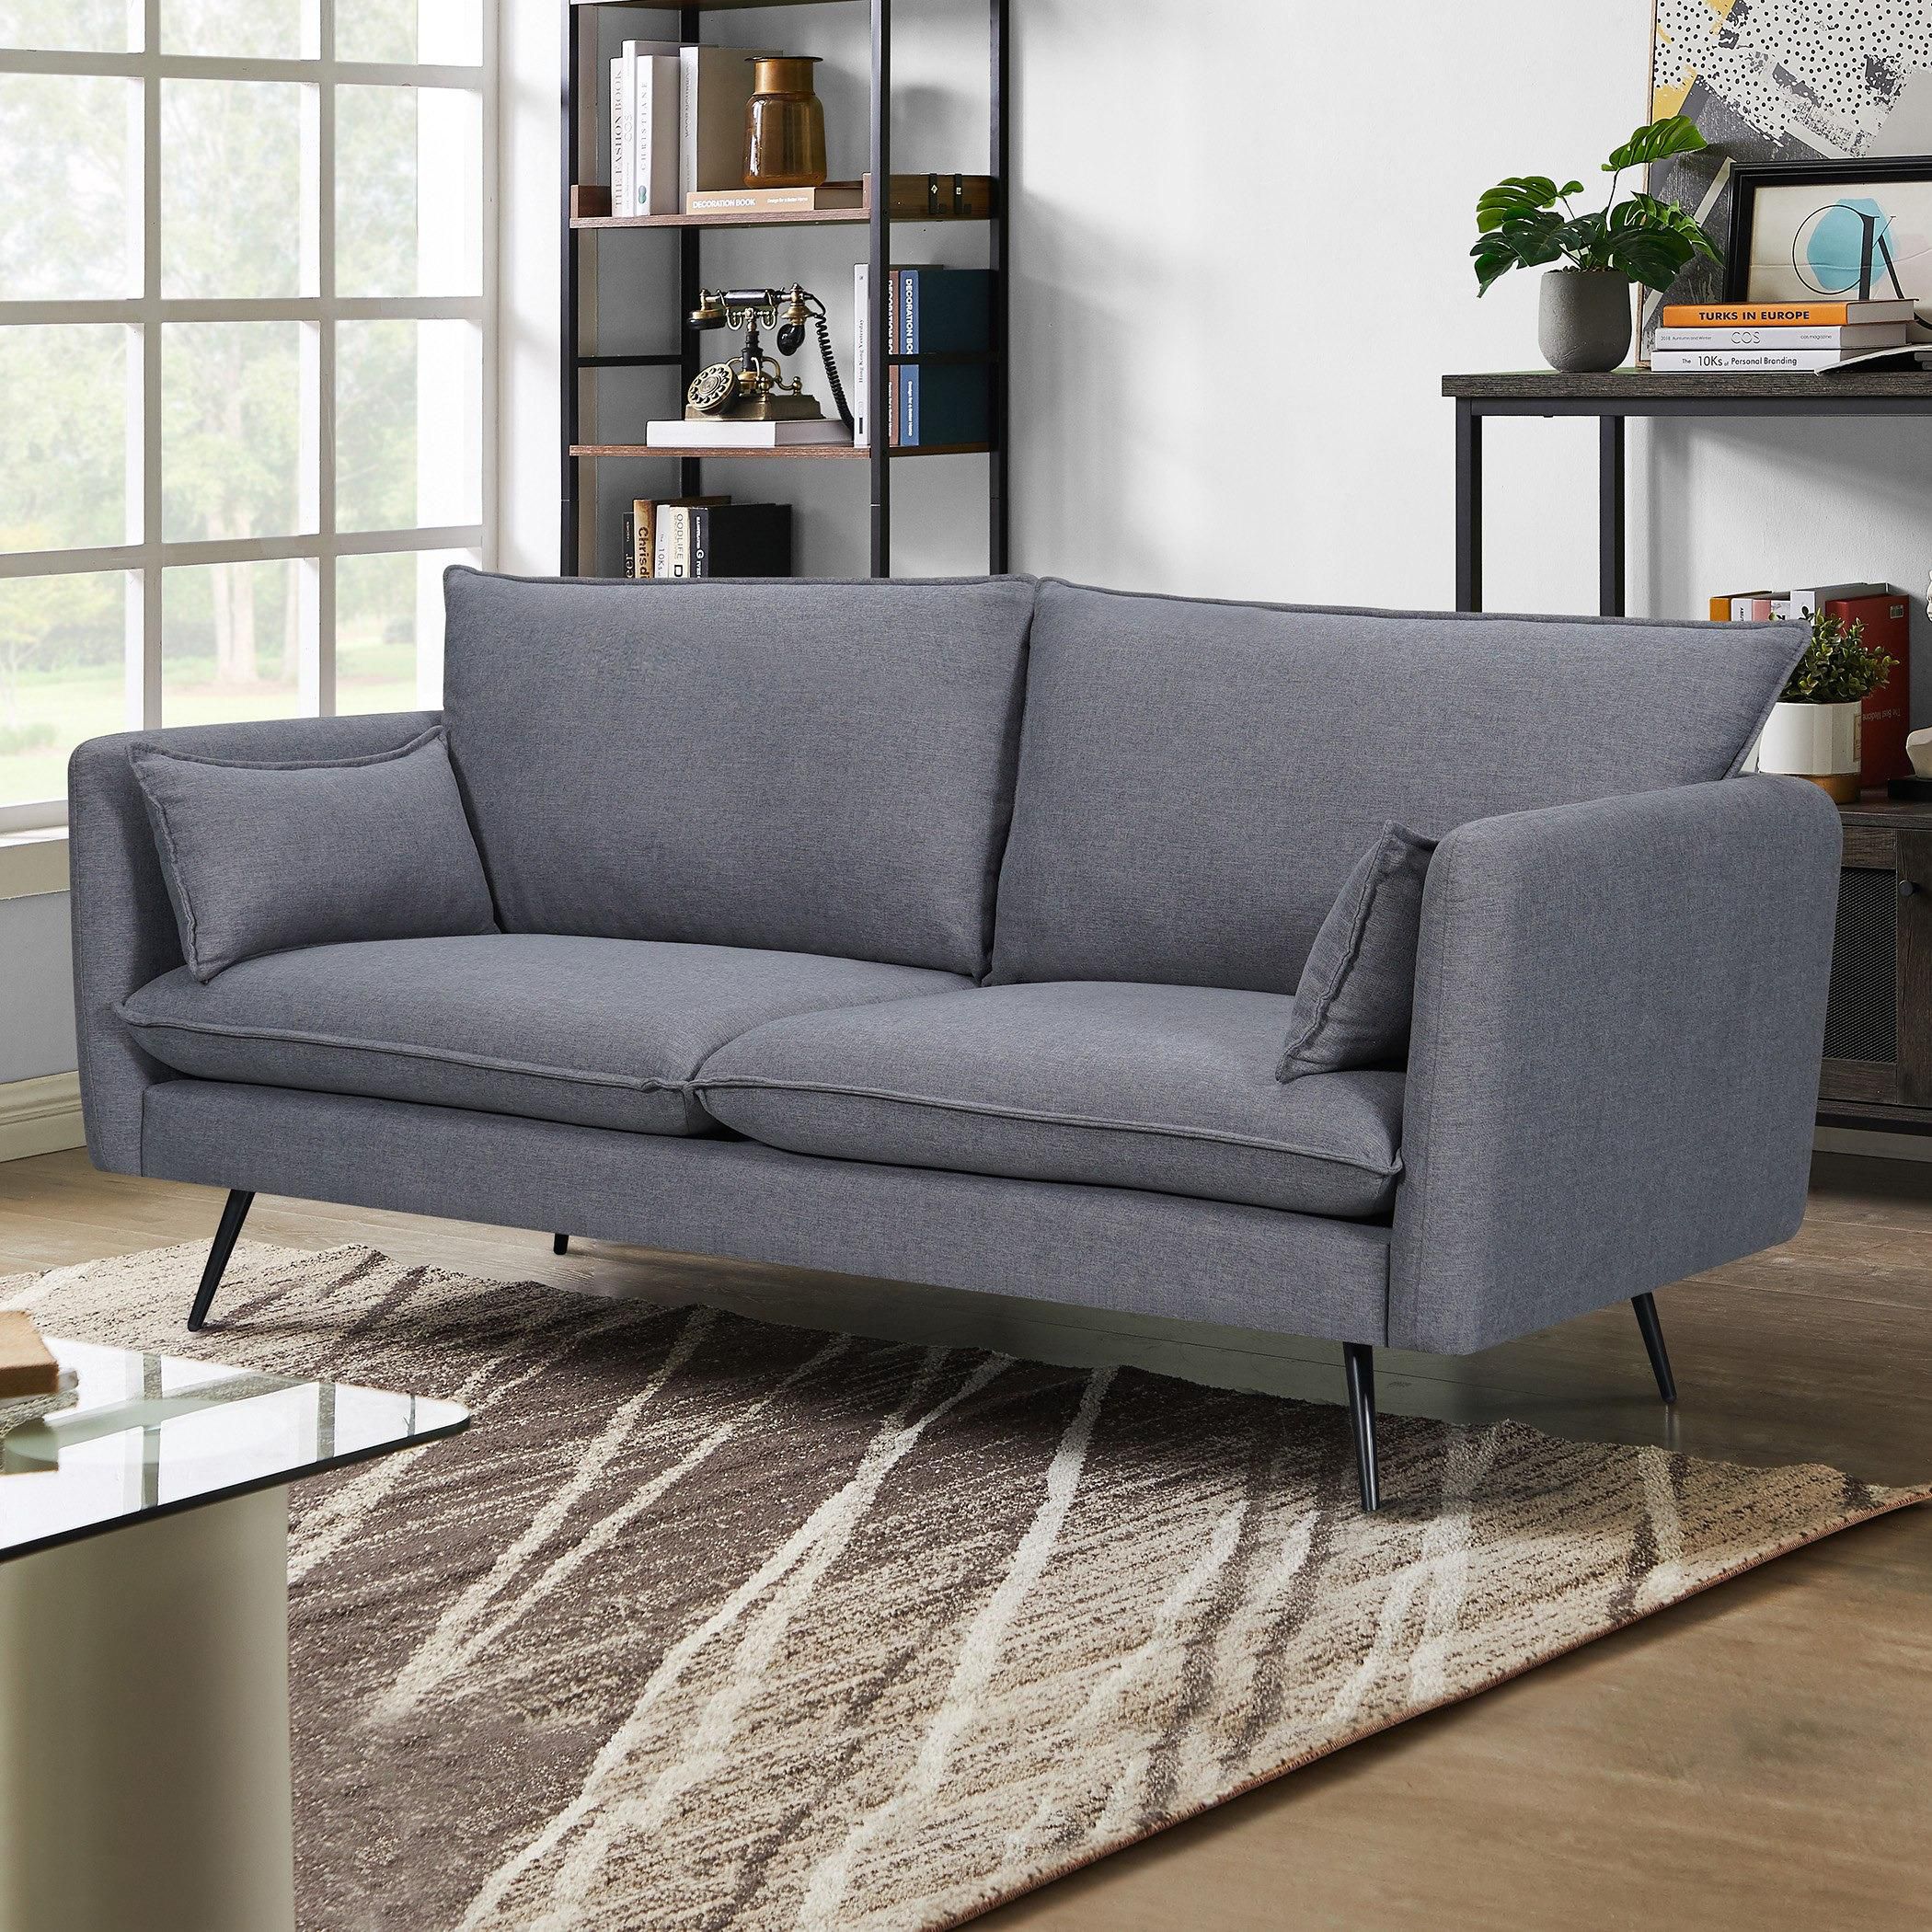 Artigo 3-Seater Fabric Sofa with 2 Cushions